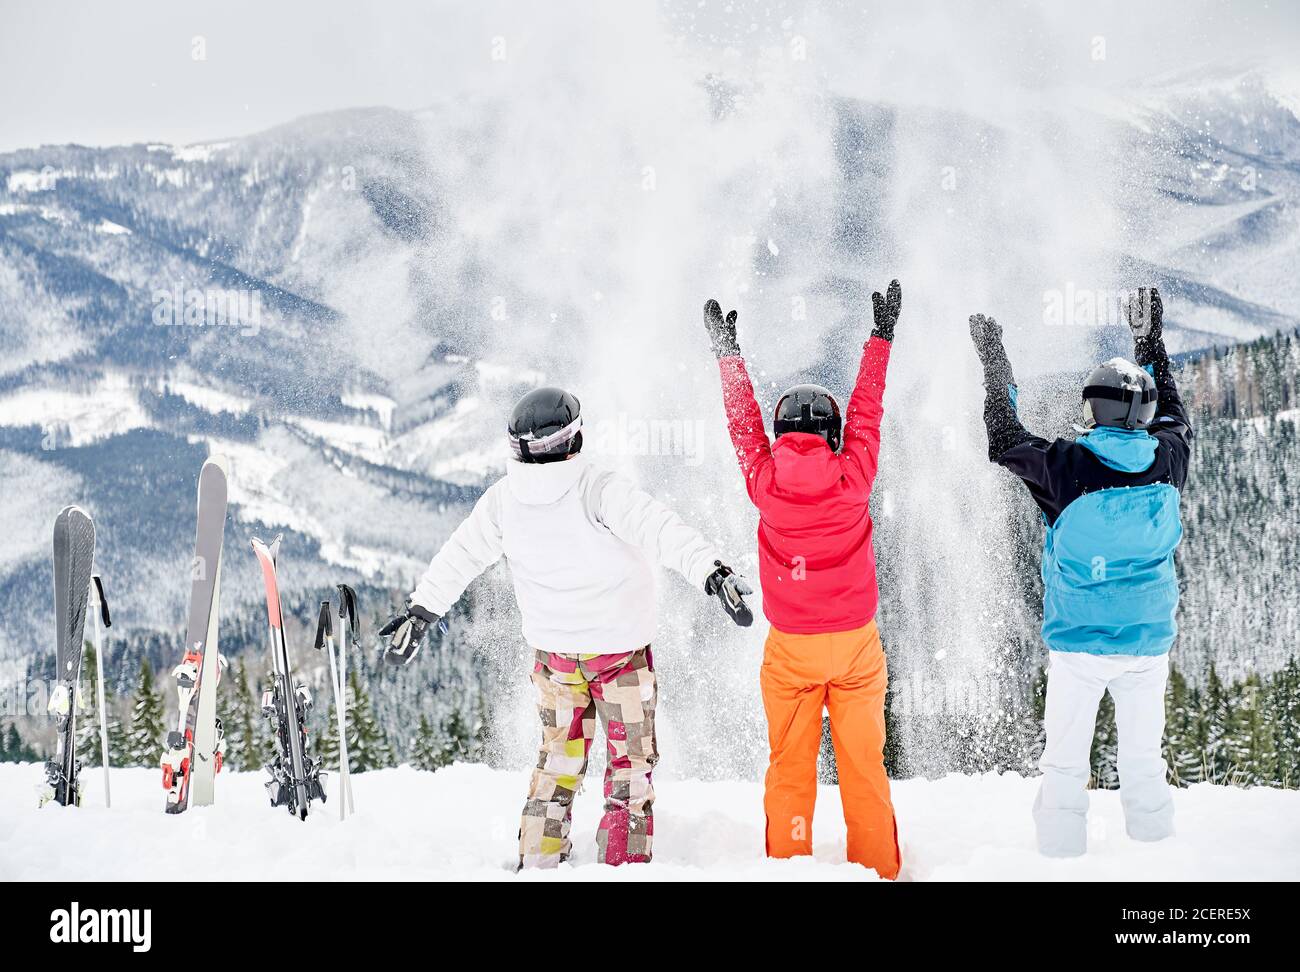 Rückansicht von Freunden Skifahrer in Skianzügen und Helmen werfen frischen Pulverschnee hoch in die Luft, Spaß auf verschneiten Hügel mit schönen Bergen im Hintergrund. Konzept von Skigebiet und Freundschaft. Stockfoto